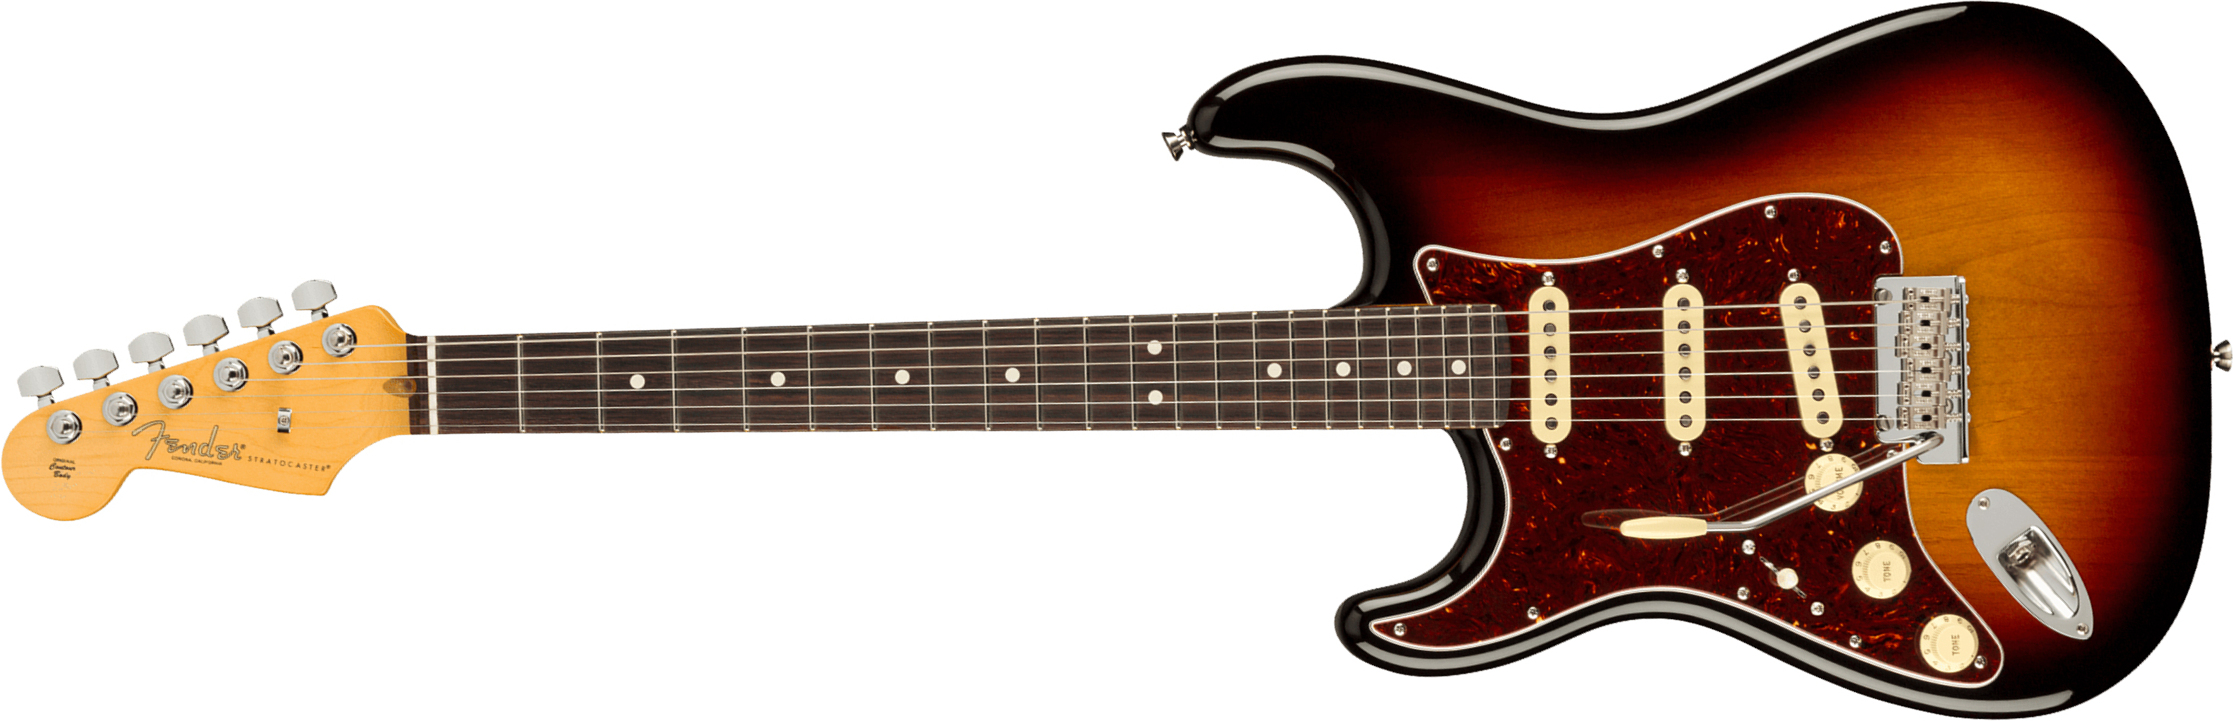 Fender Strat American Professional Ii Lh Gaucher Usa Rw - 3-color Sunburst - Linkshandige elektrische gitaar - Main picture